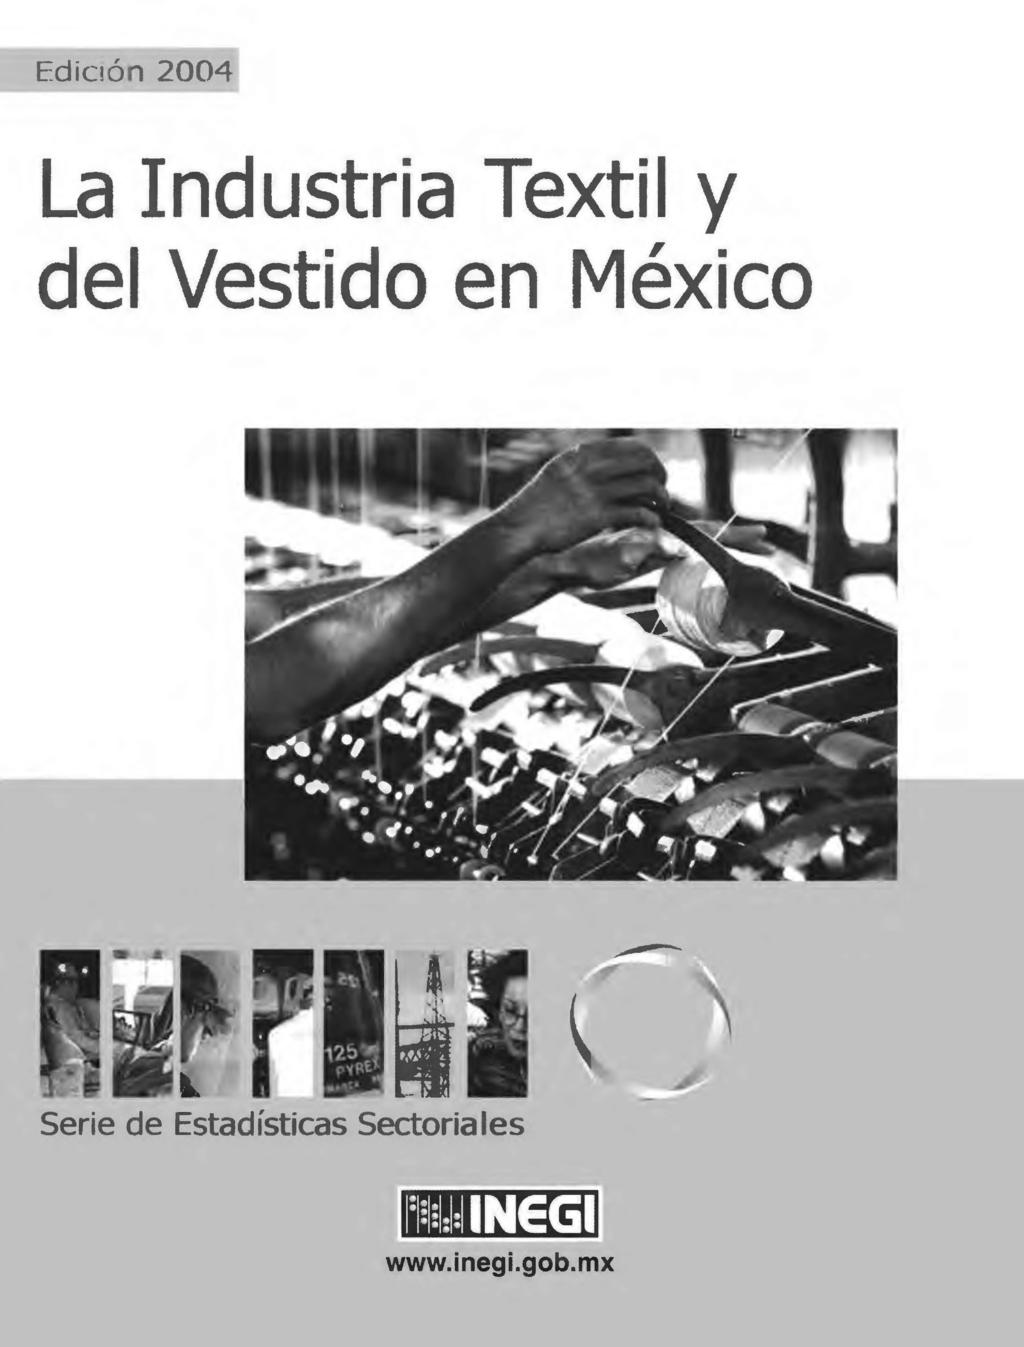 Edición 2004 La Industria Textil y del Vestido en México